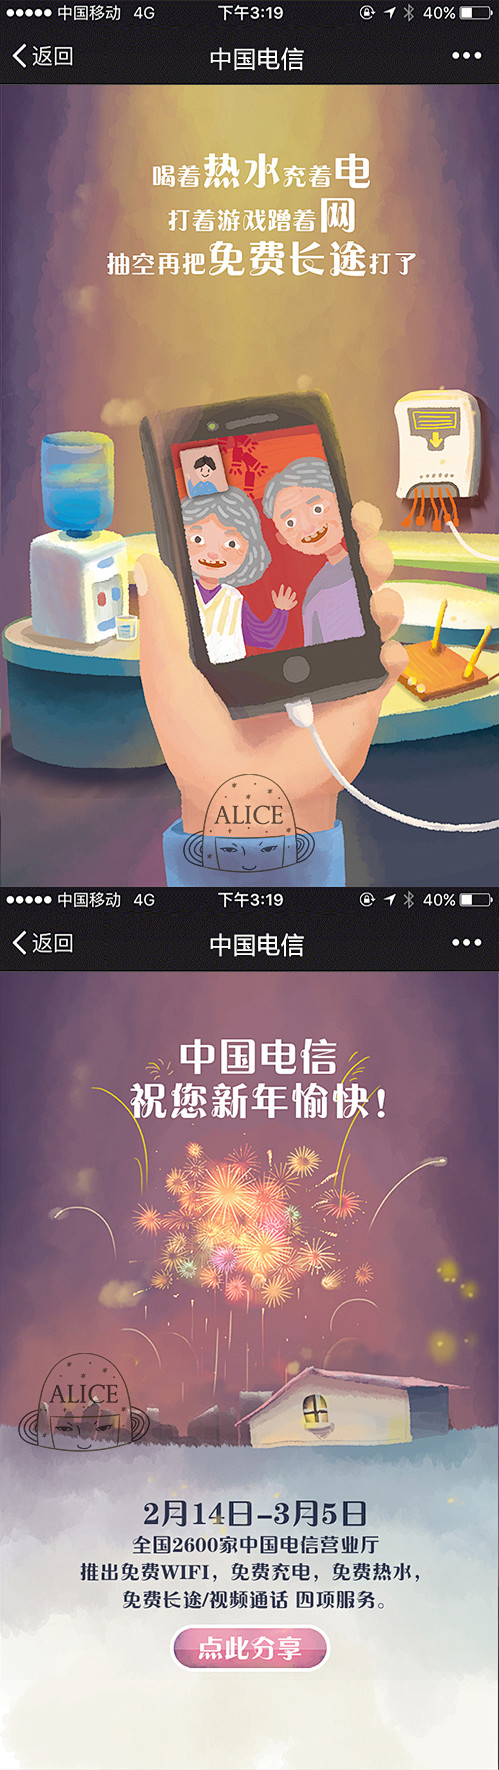 隐身少女Alice-中国电信营业厅 H5...